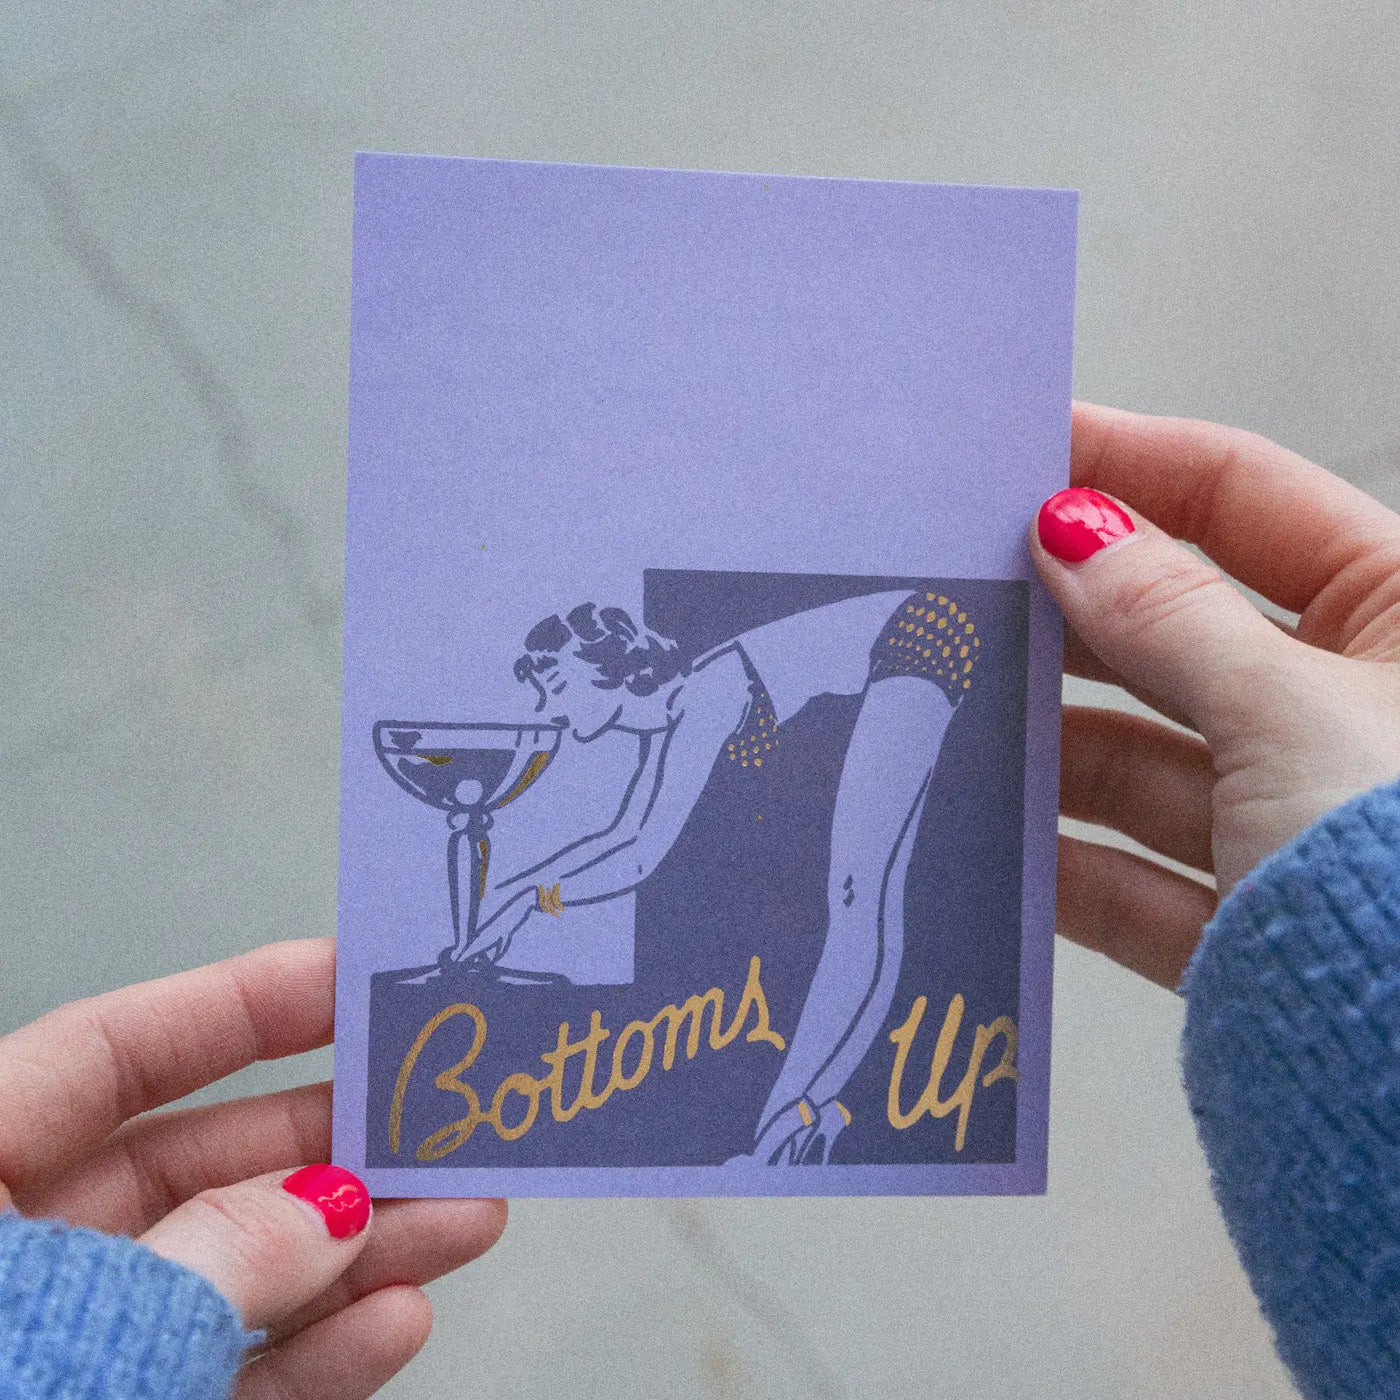 Bottoms Up Postcard